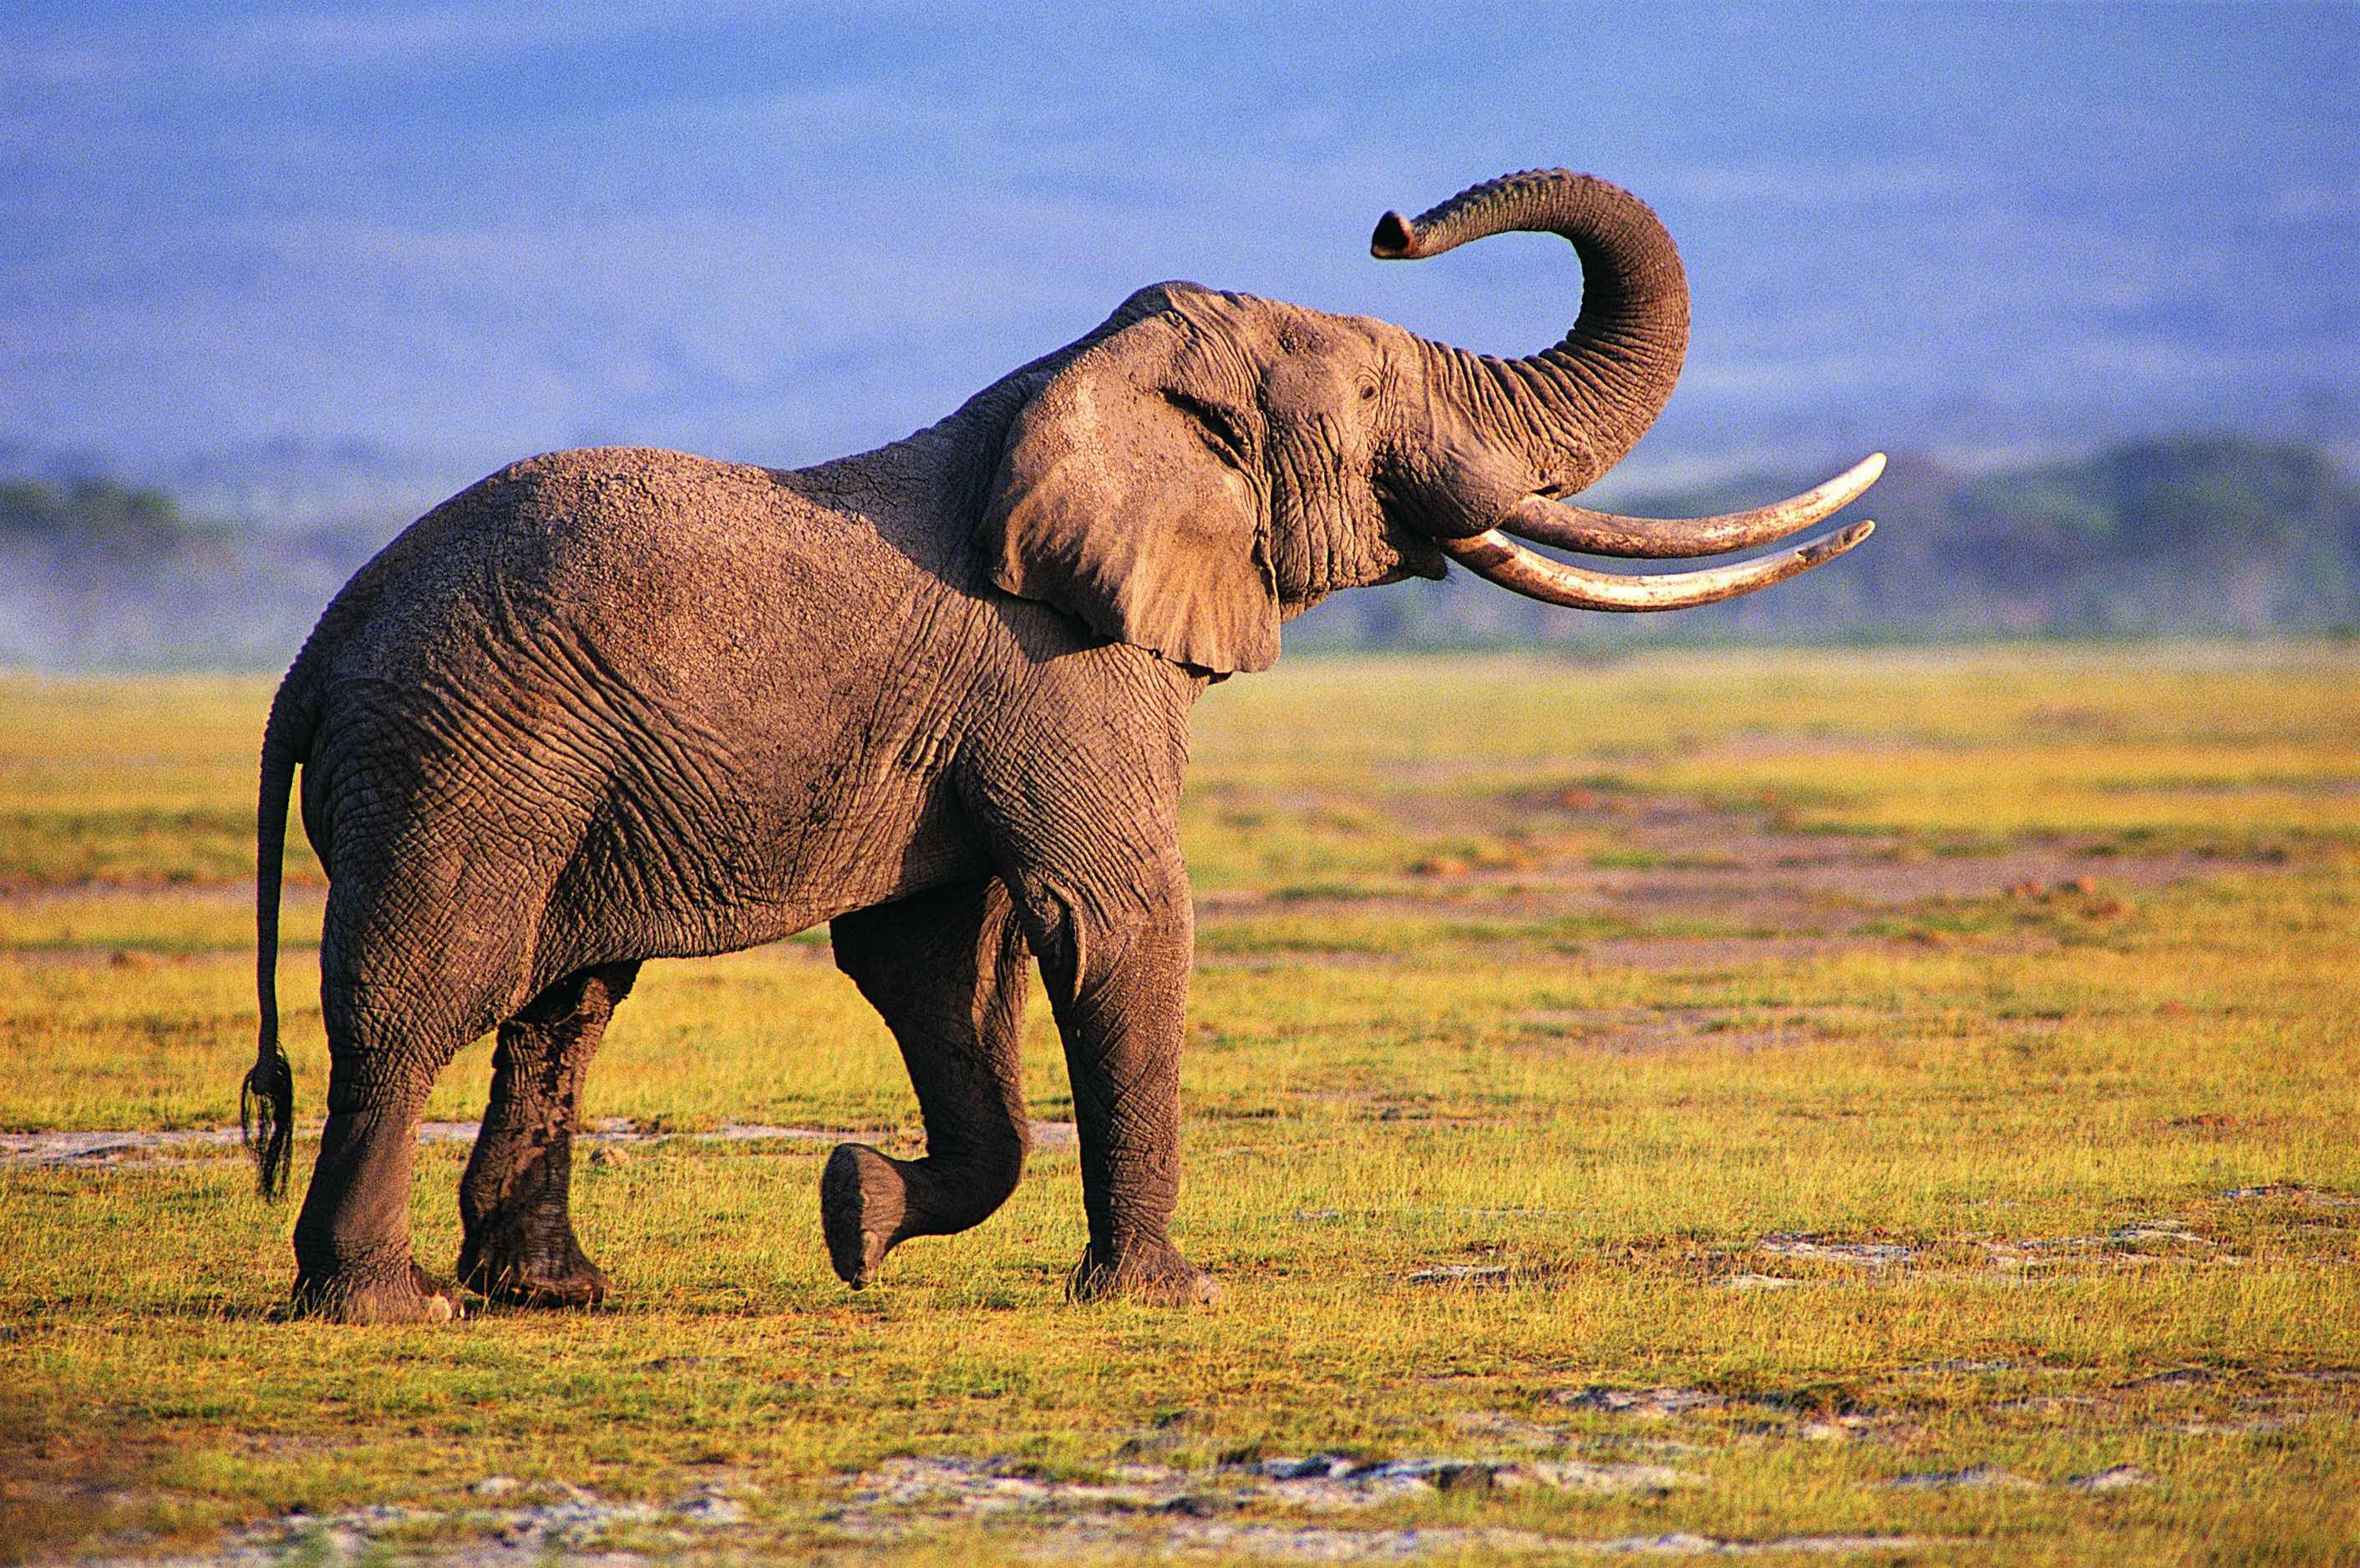 wildlife, elephants - desktop wallpaper